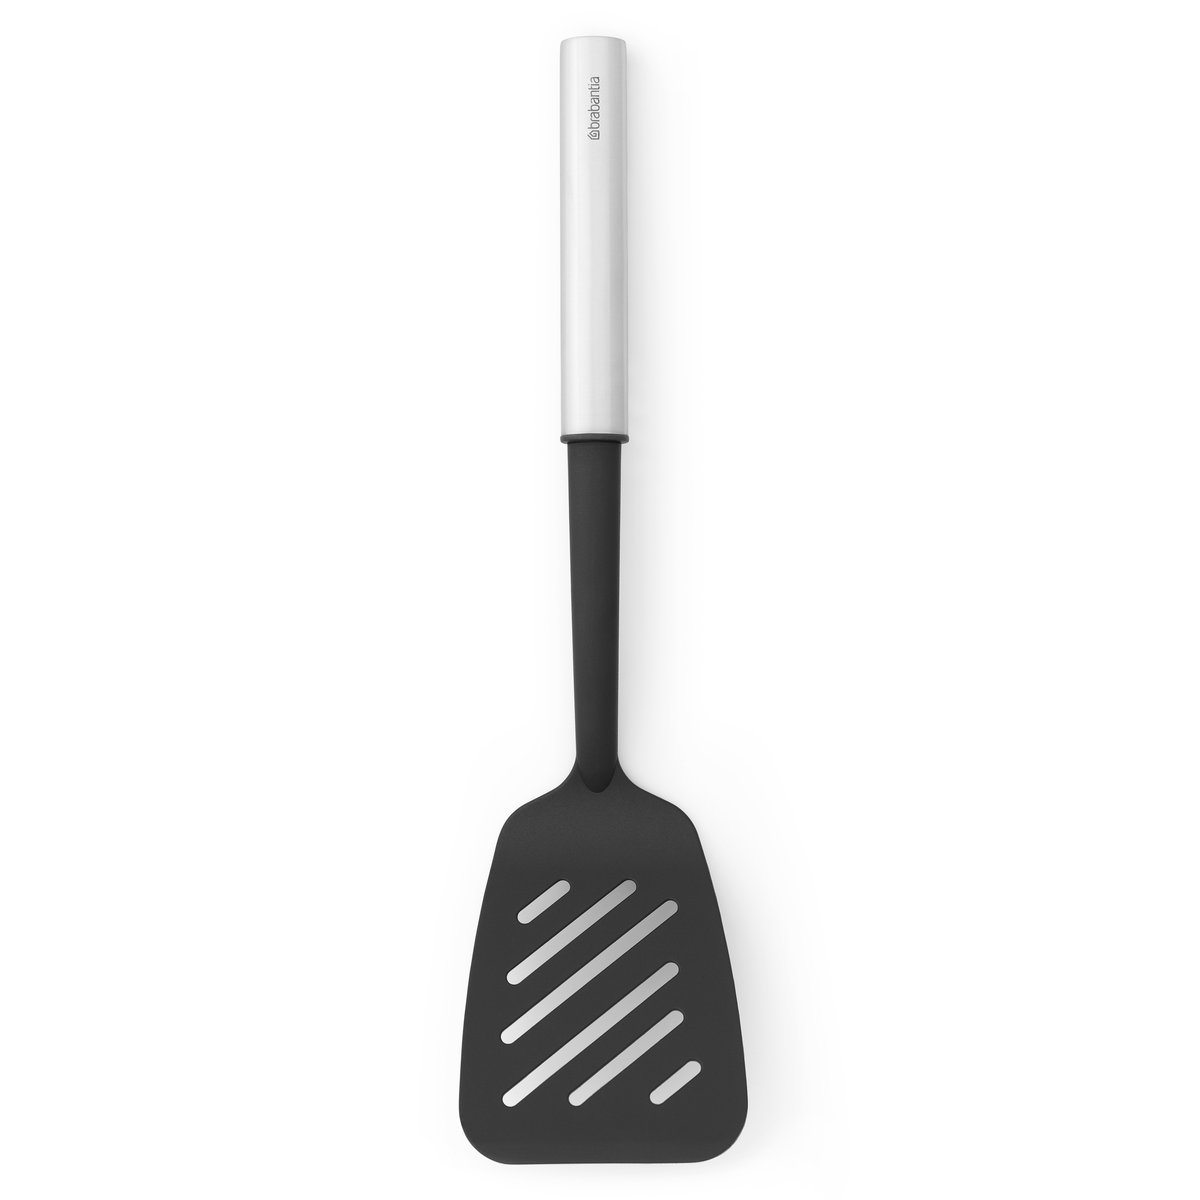 brabantia grande spatule anti-adhésive profile acier inoxydable